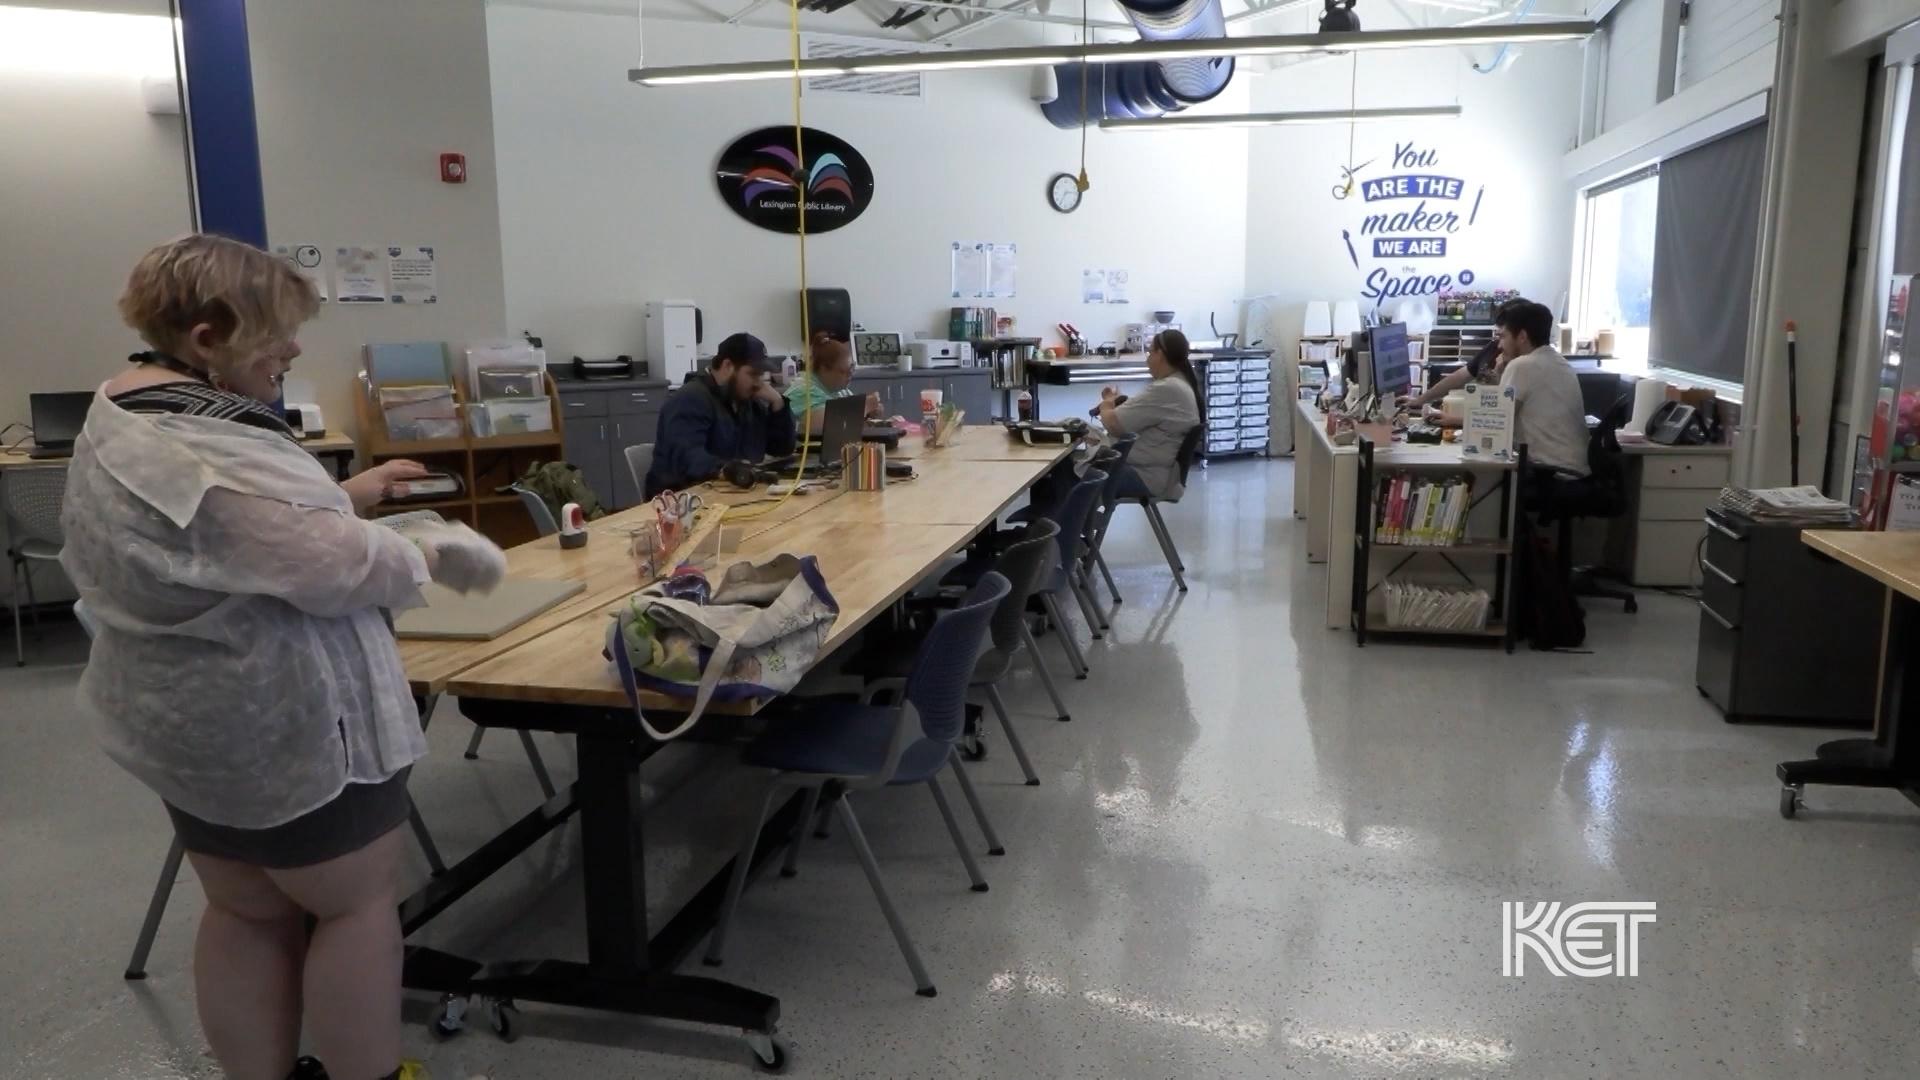 We Check out Lexington Public Library’s "Makerspaces"